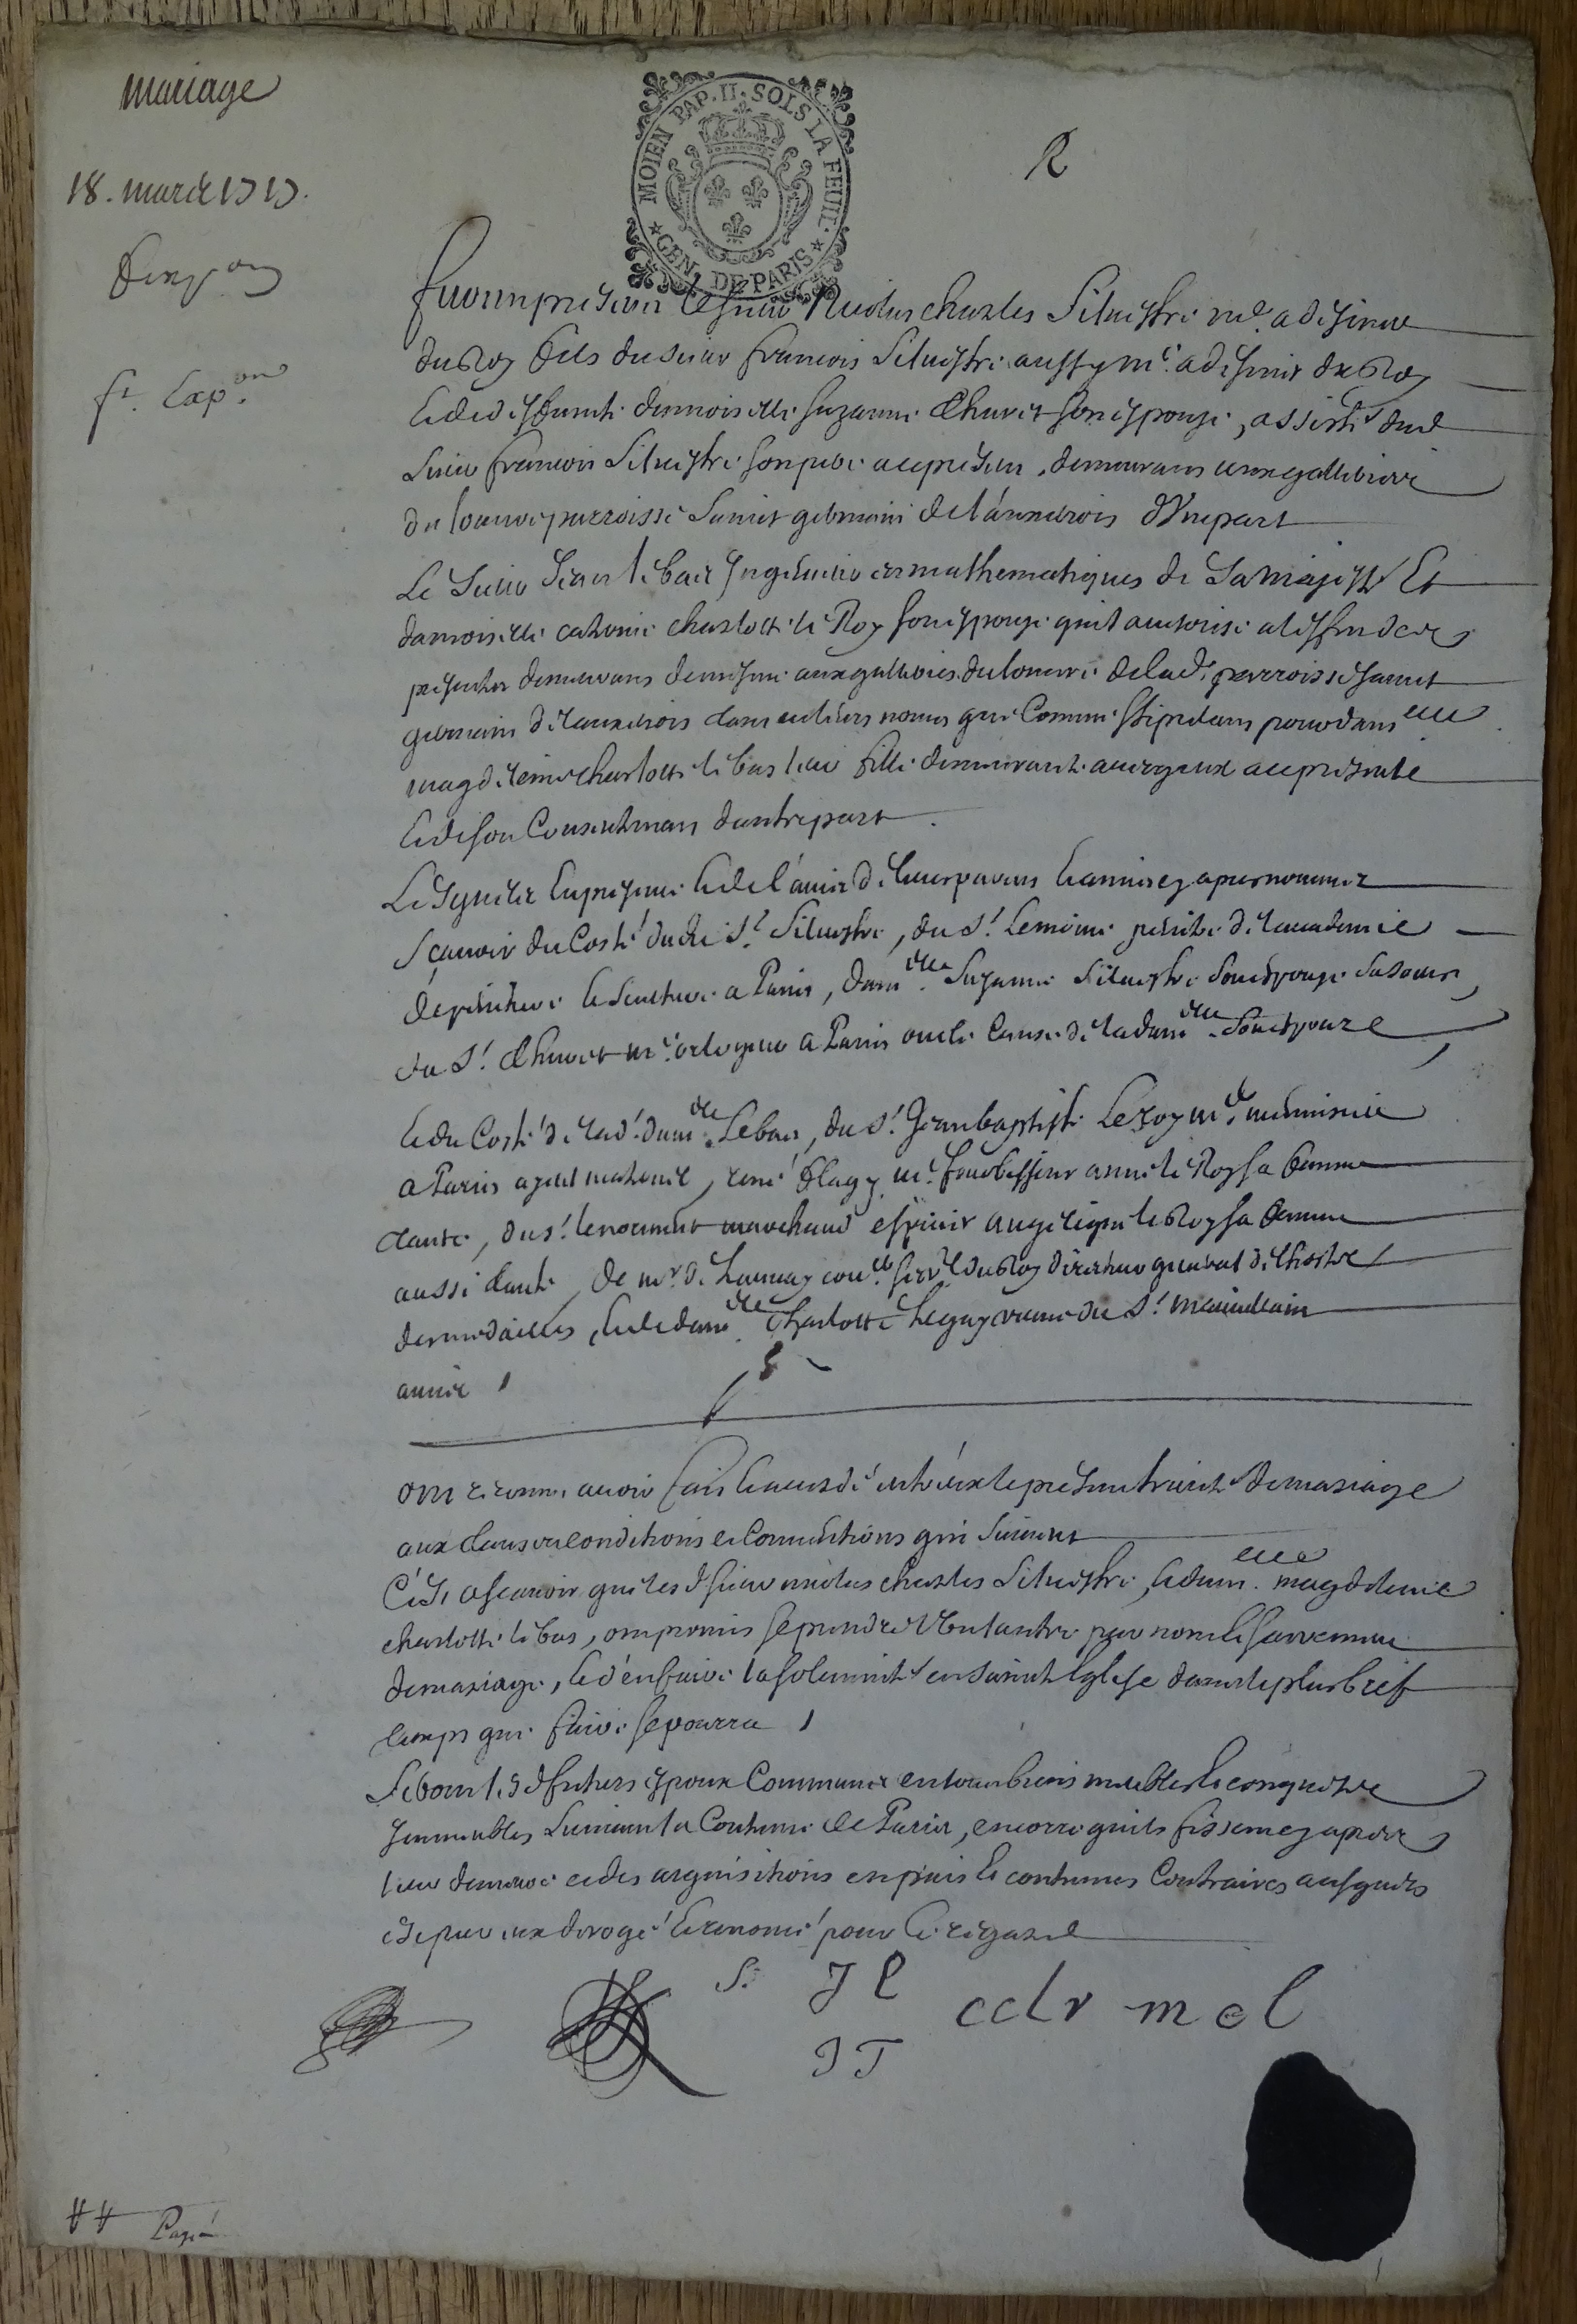  Contrat de Mariage entre Nicolas Charles de Silvestre et Madeleine Lebas - Page 1